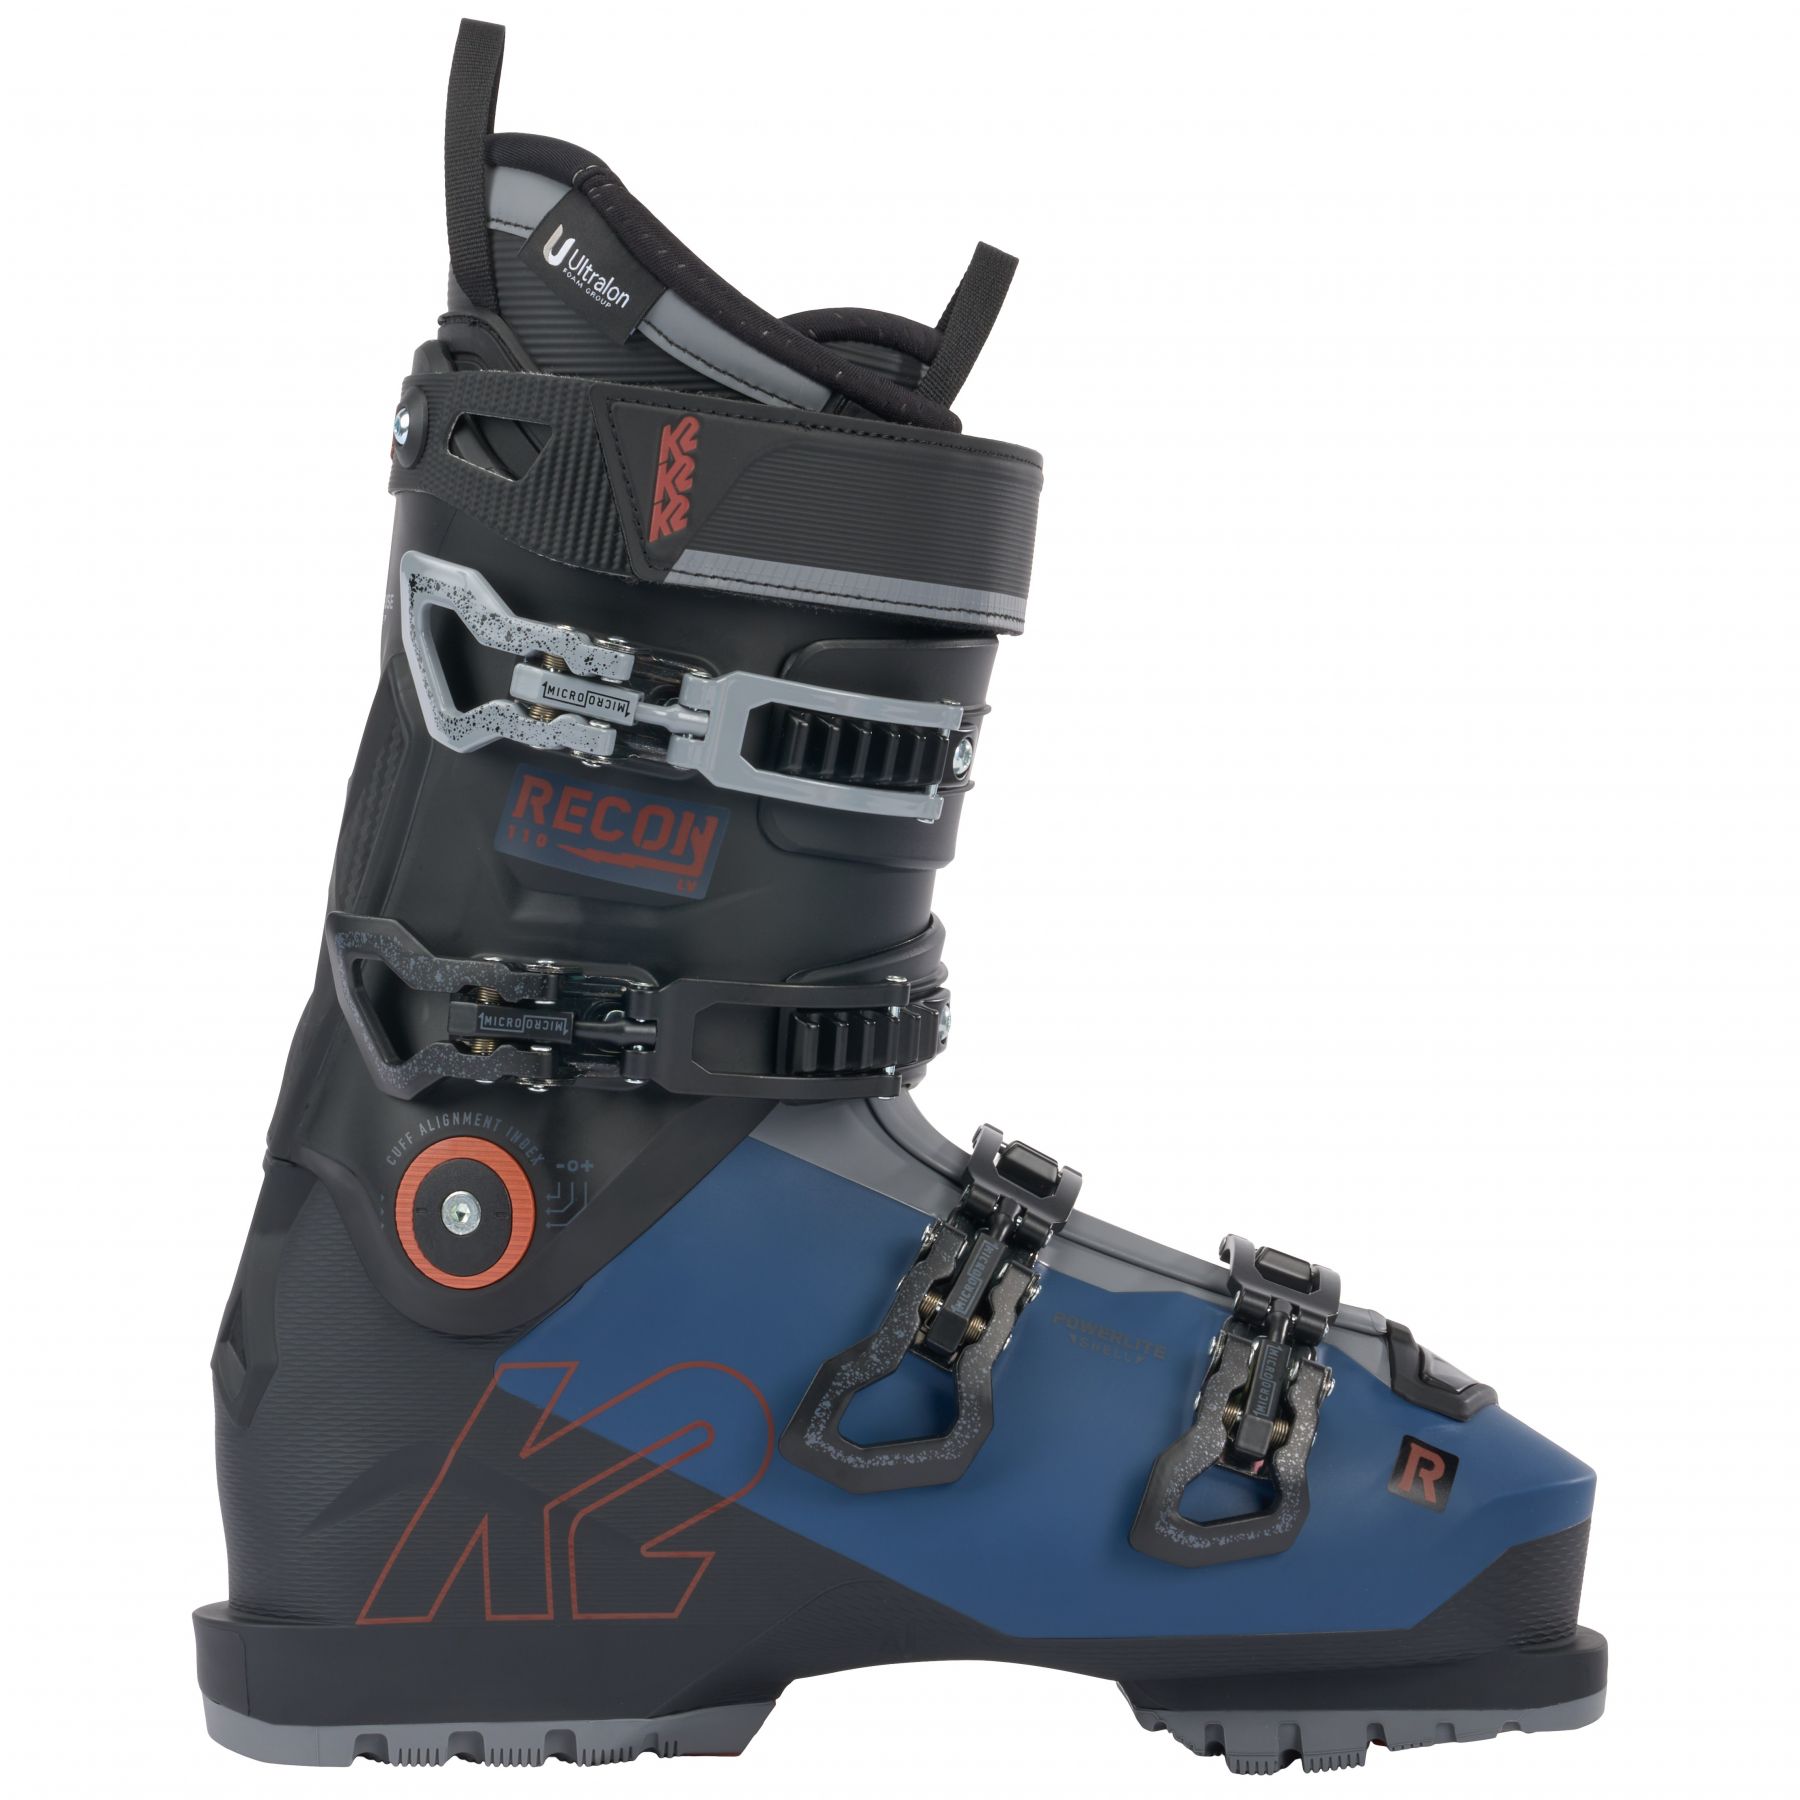 Billede af K2 Recon 110 LV, skistøvler, herre, mørkeblå/sort hos Skisport.dk